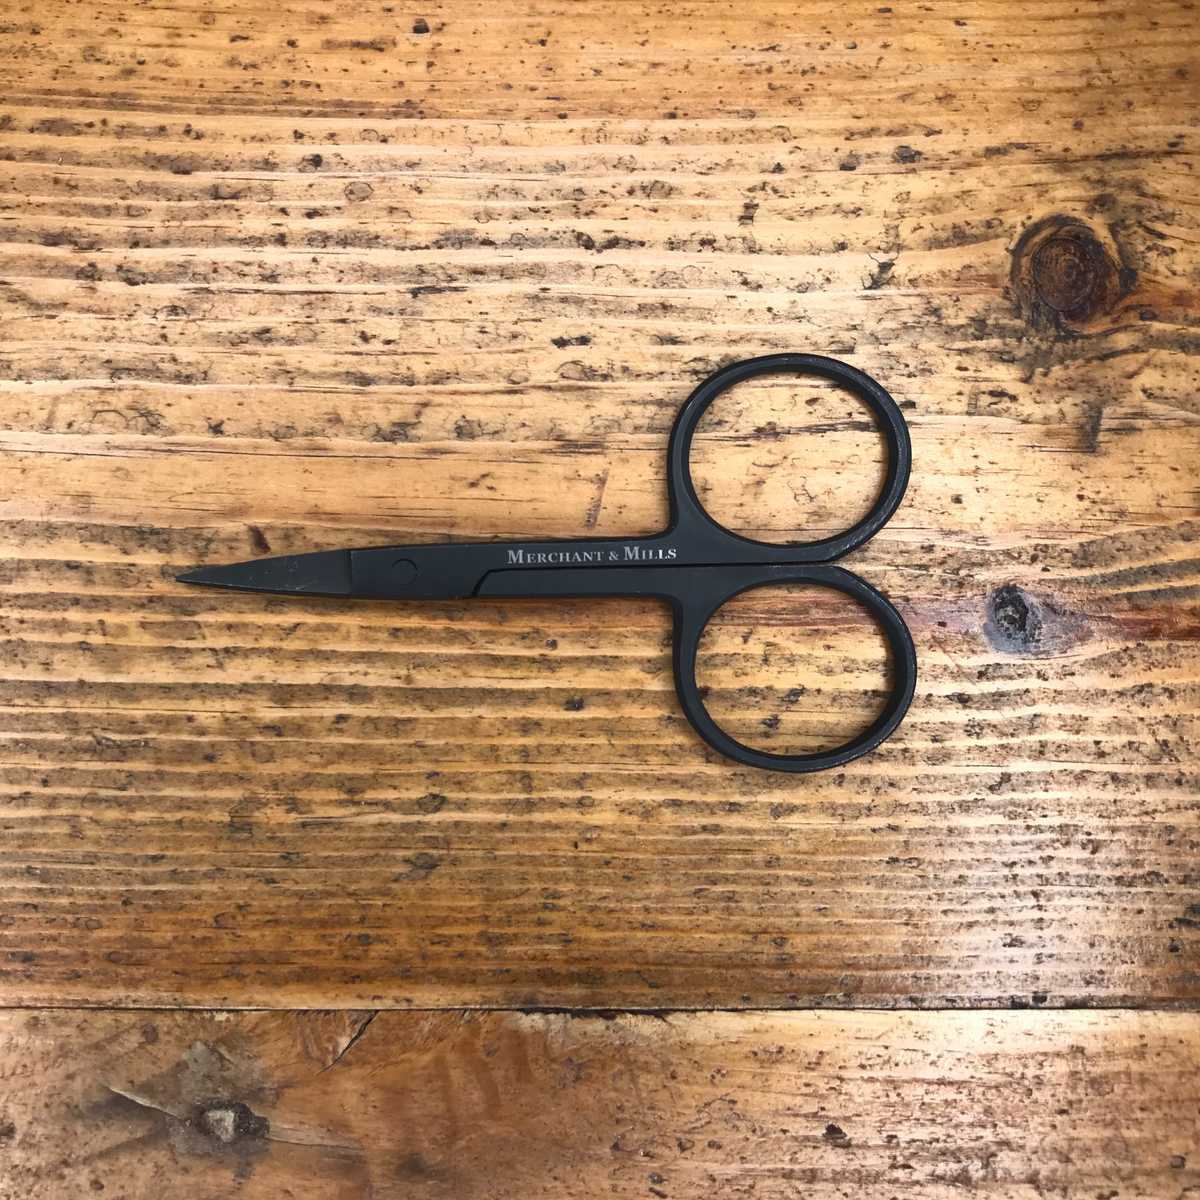 Merchant & Mills Wide Bow Scissors - theweavingroom